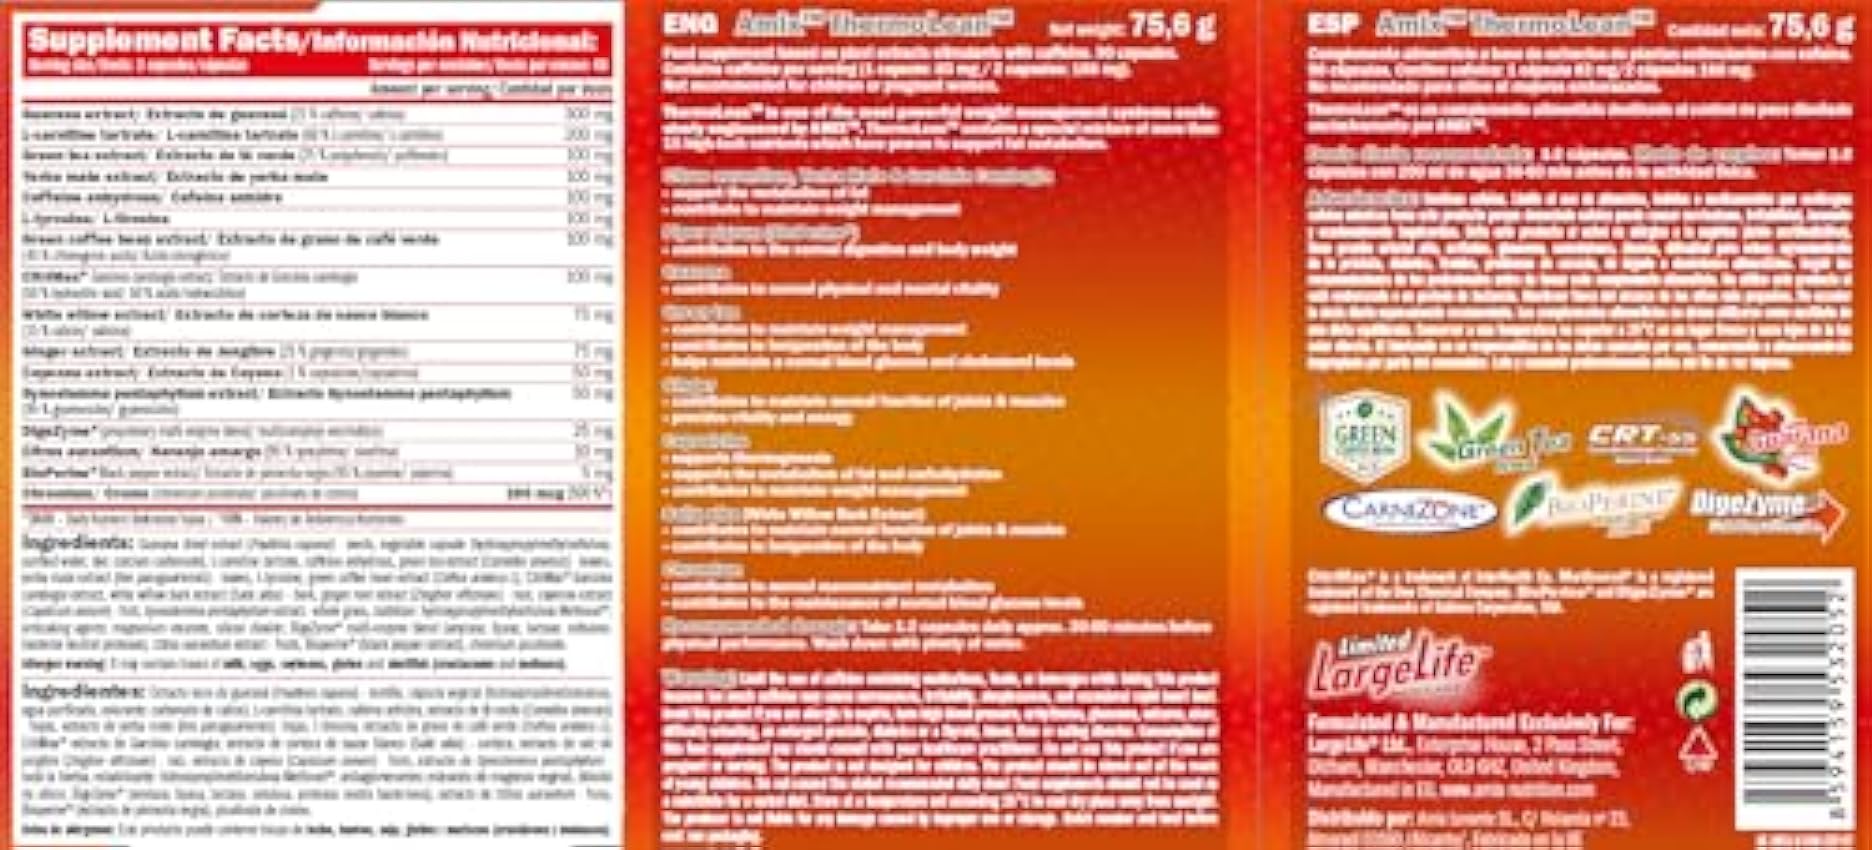 AMIX - Quemador de Grasa - Thermolean - 90 Cápsulas - Complemento que Ayuda a Adelgazar - Complemento Alimenticio con Cafeína - Componentes Naturales - Inhibidor de Apetito y Ansiedad oaiLMqi3